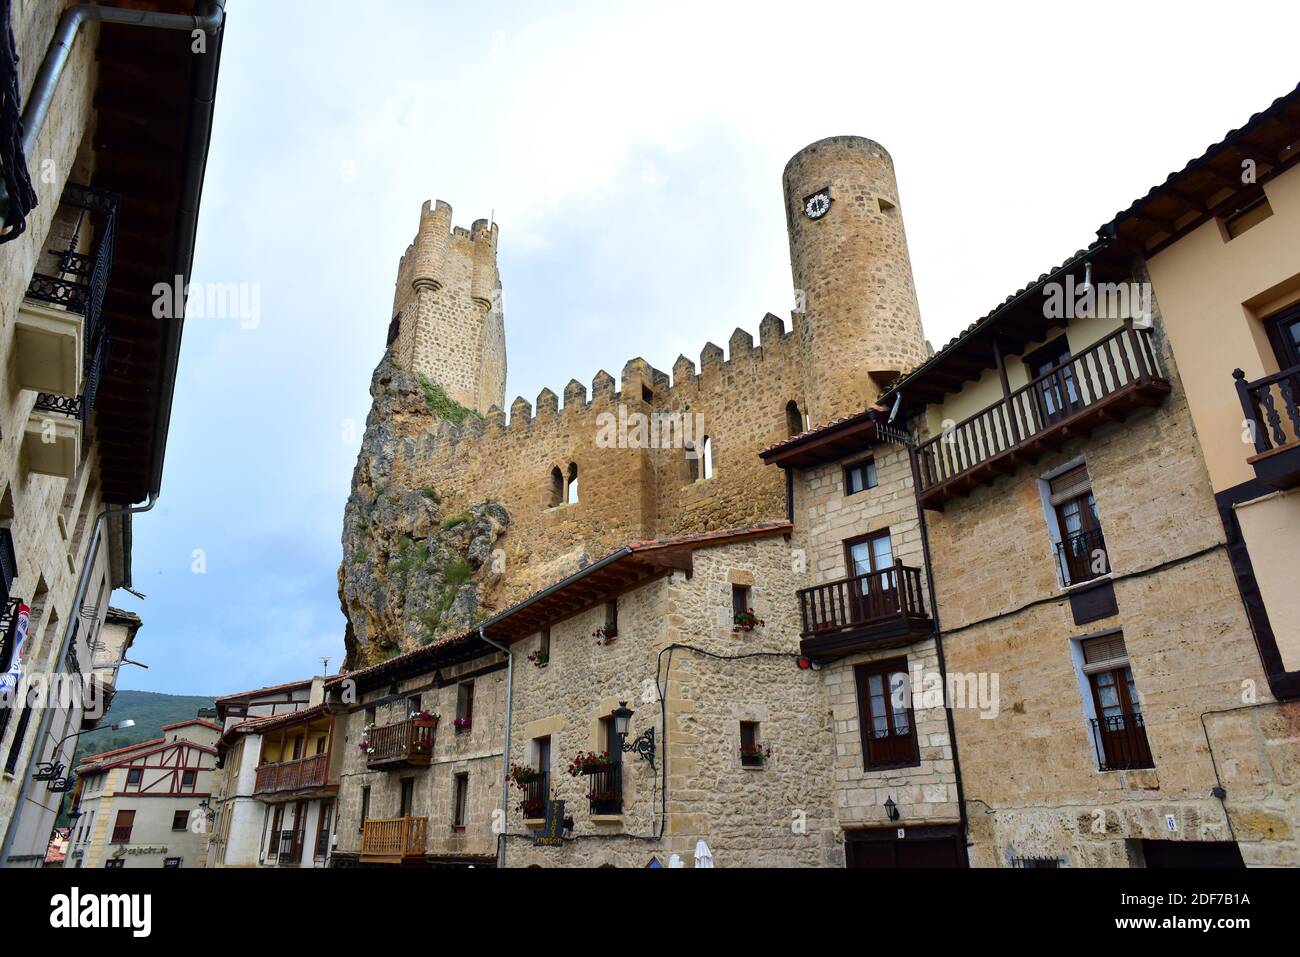 Frias. Burgos province, Castilla y Leon, Spain. Stock Photo